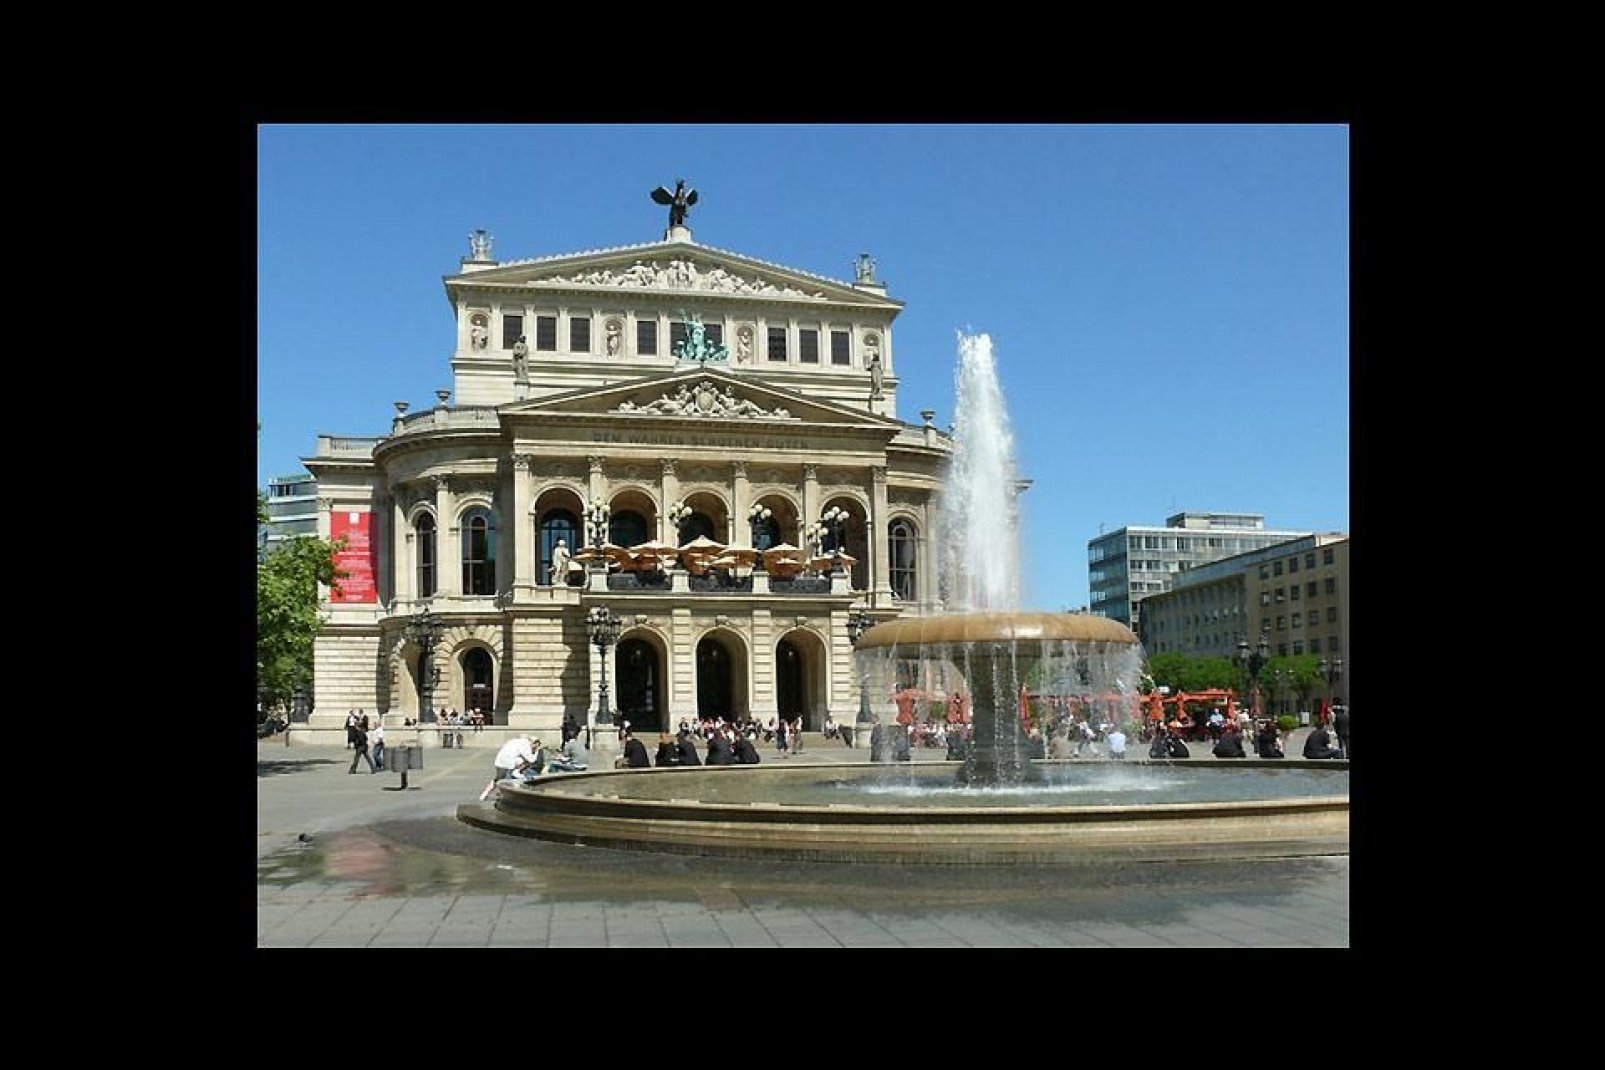 L'Opera di Francoforte è un'attrazione della città.